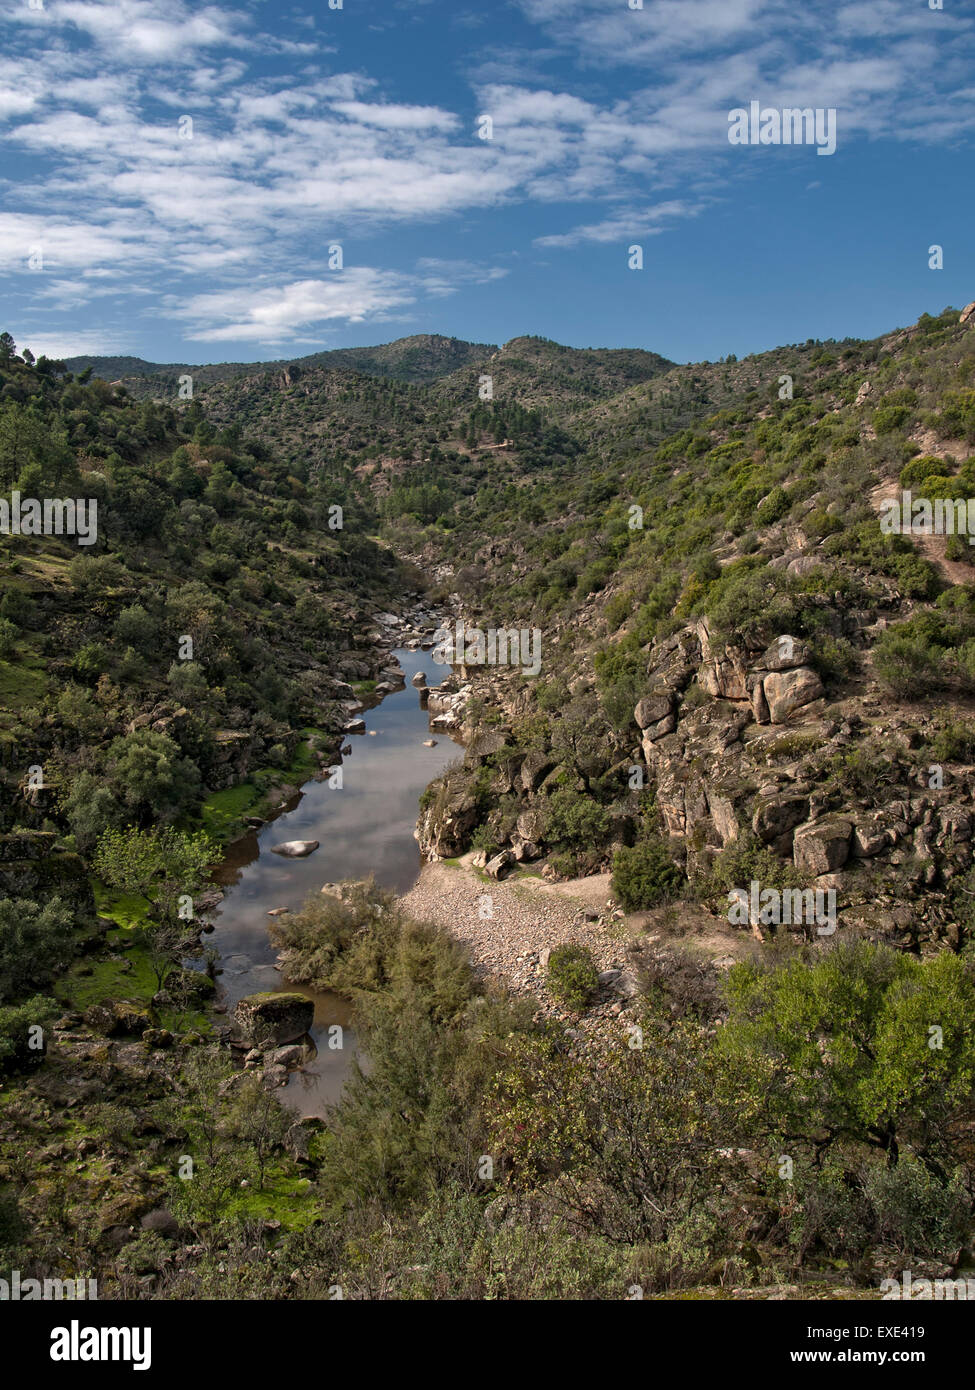 La macchia mediterranea, accanto a un fiume in Sierra de Cardeña-Montoro parco naturale. Andalusia. Spagna. Foto Stock